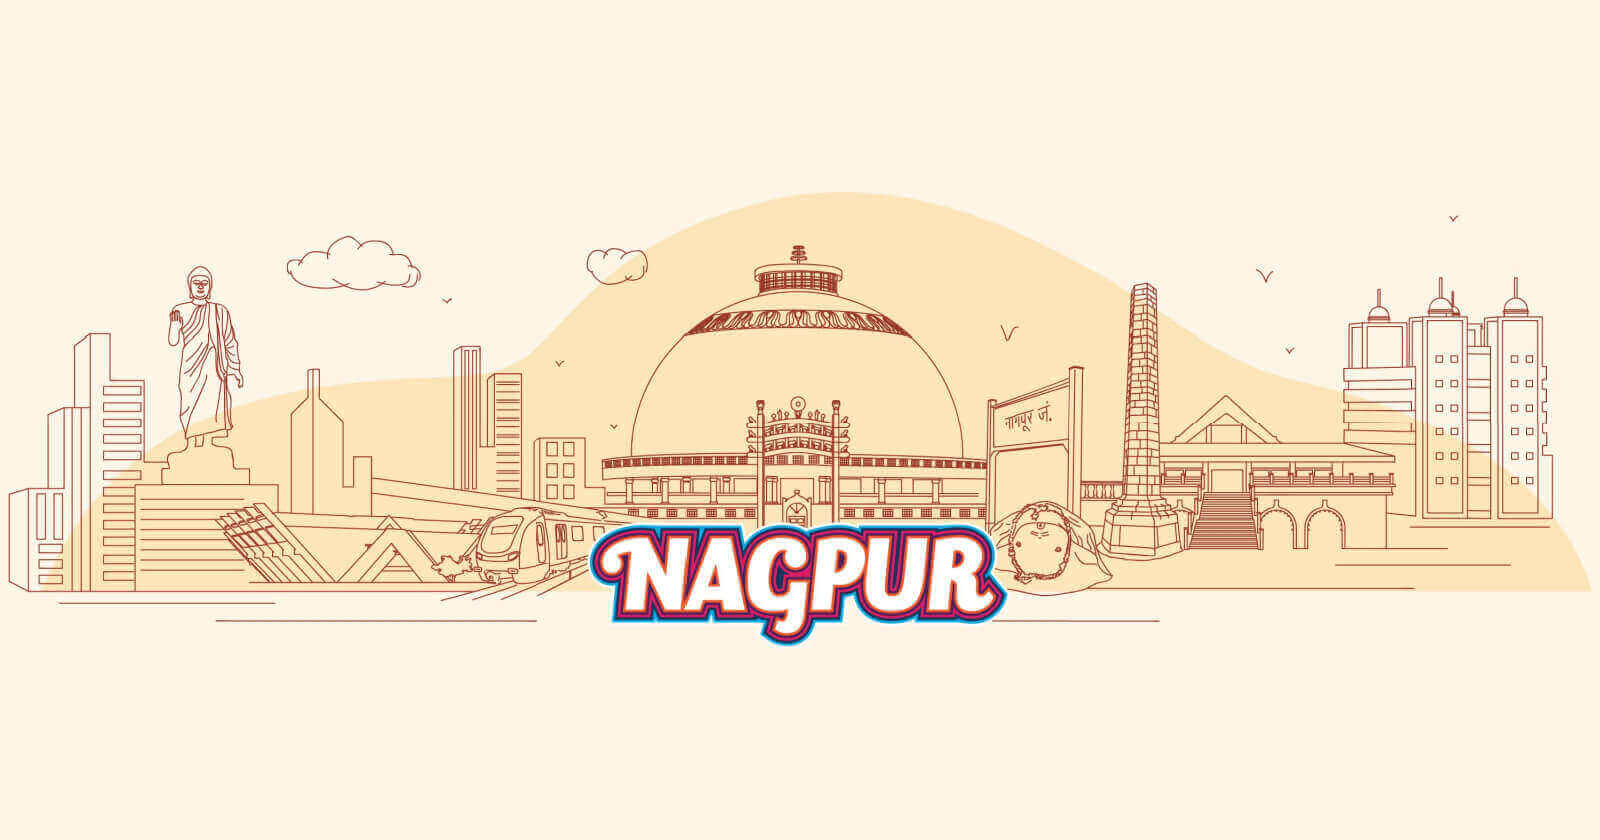 Best Places to visit Nagpur